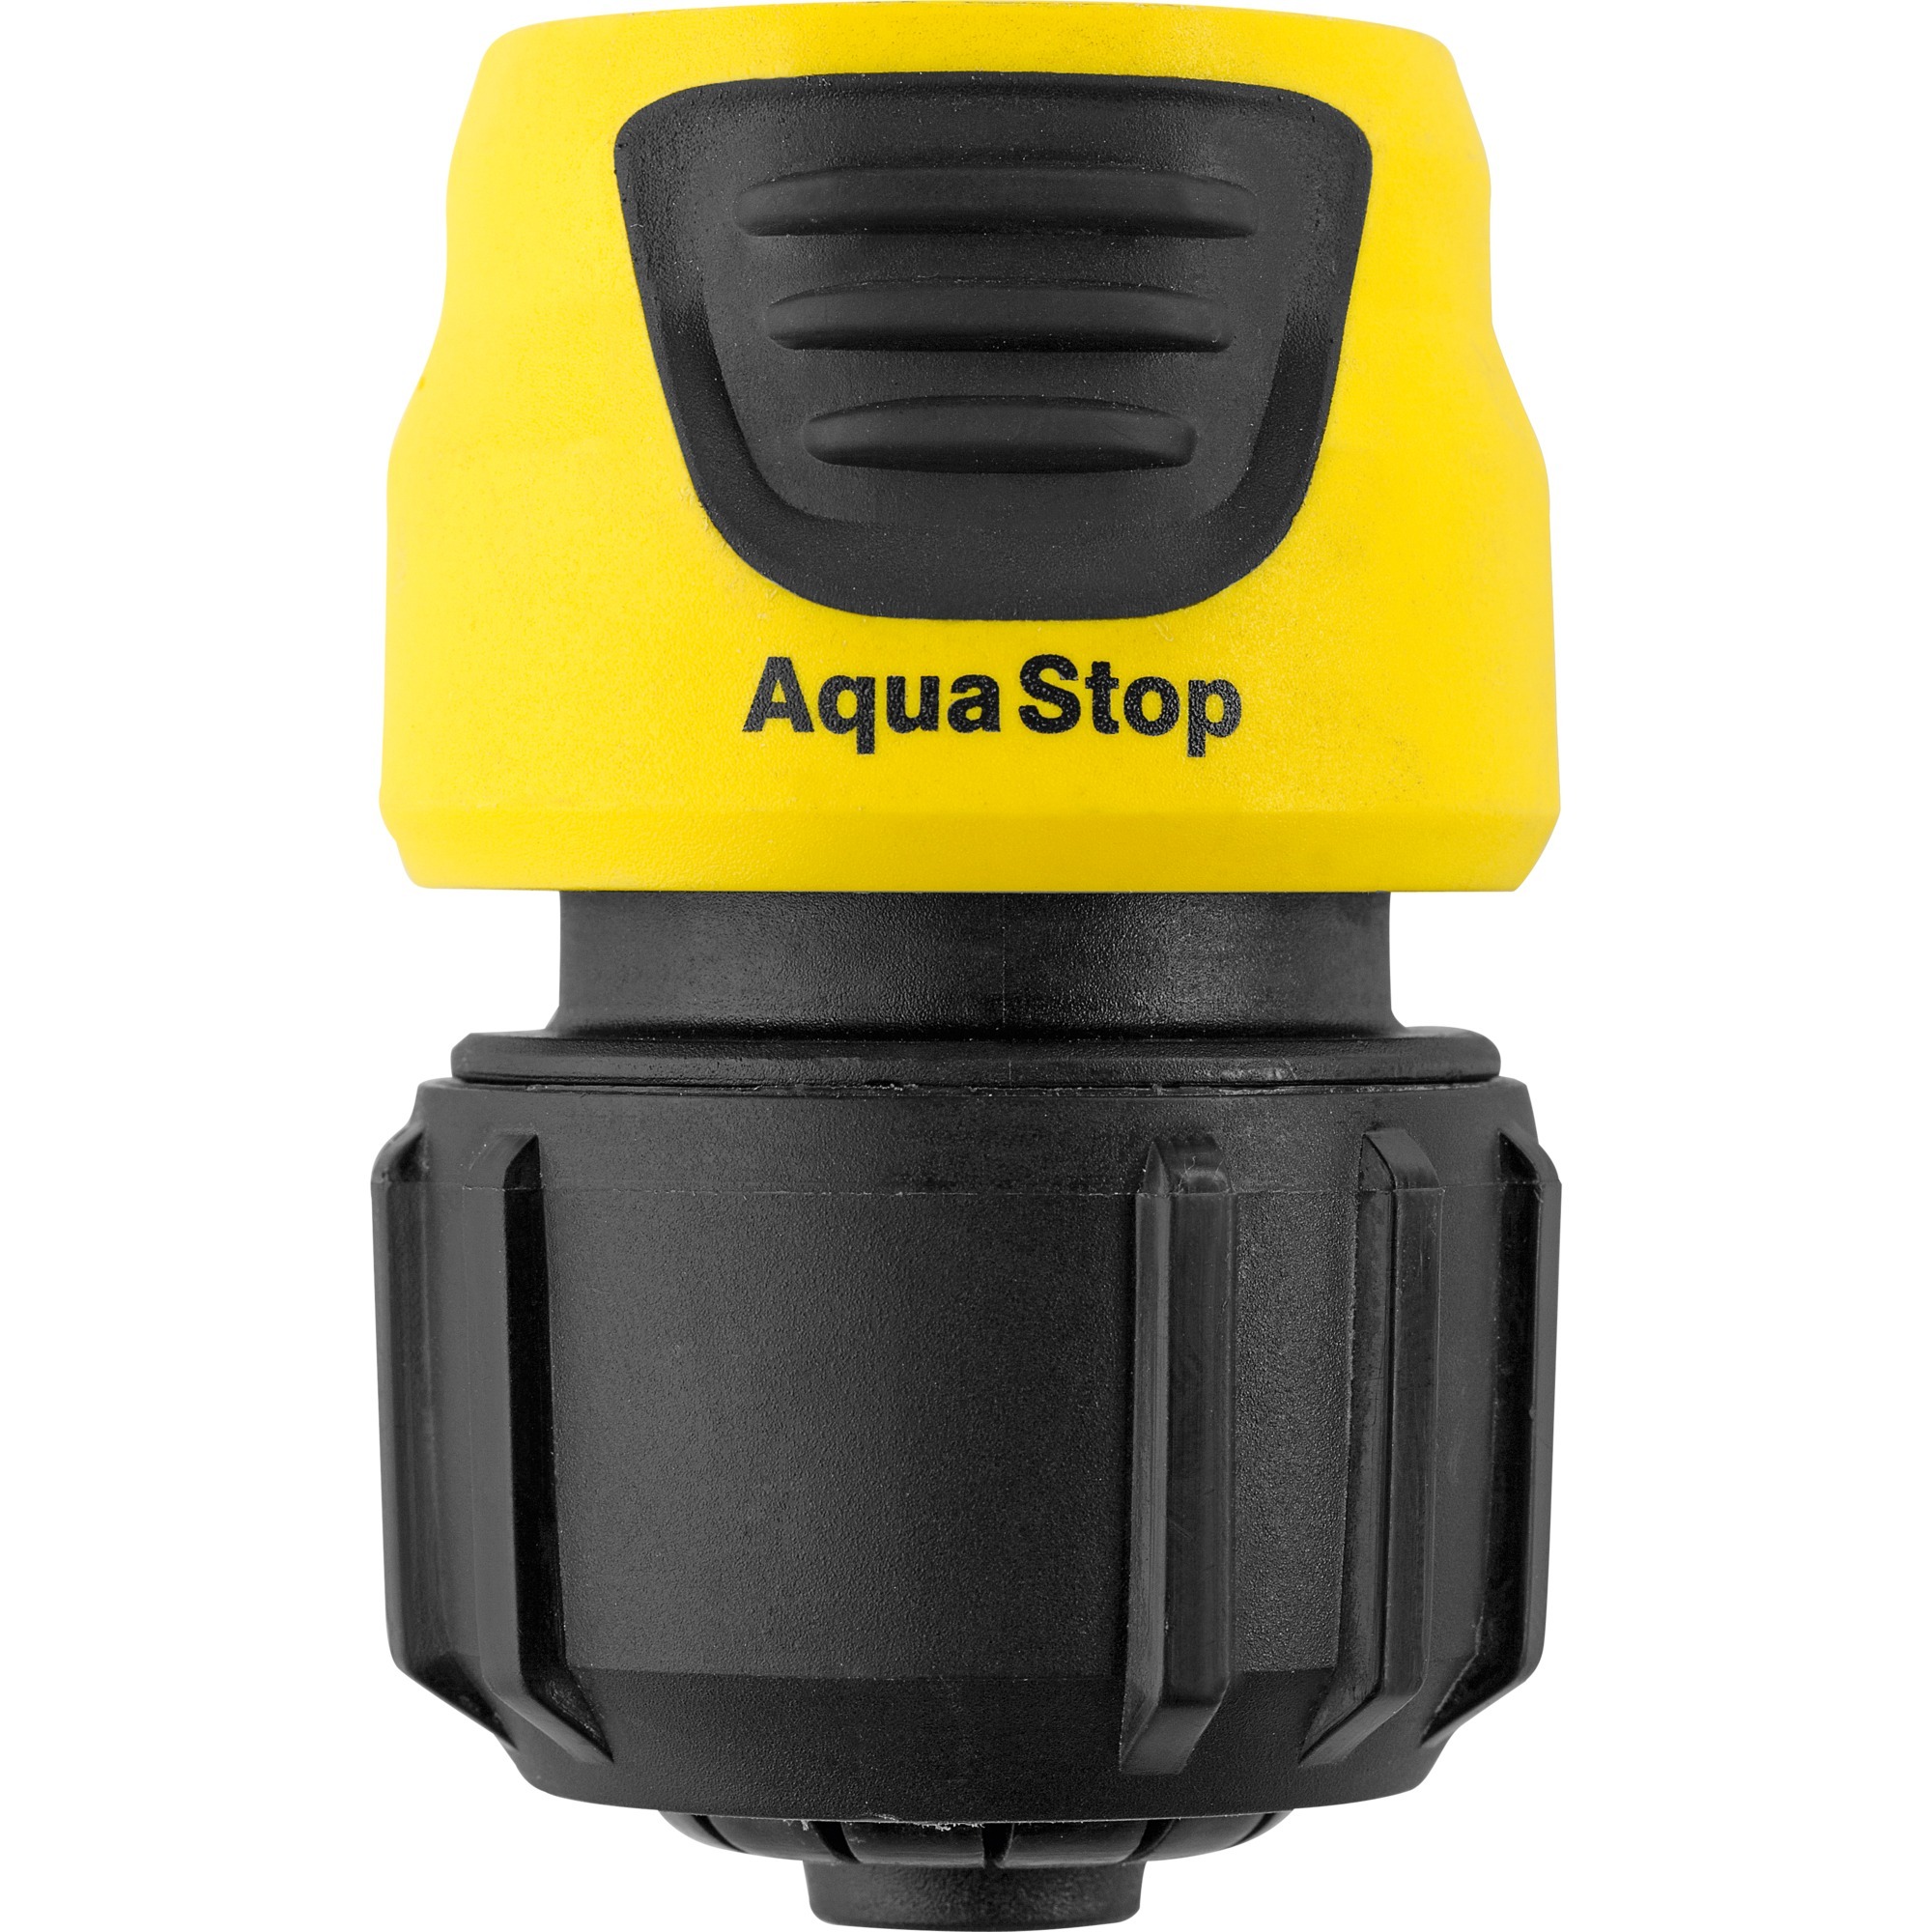 Image of Alternate - Universal-Schlauchkupplung Plus mit Aqua Stop, Schlauchstück online einkaufen bei Alternate